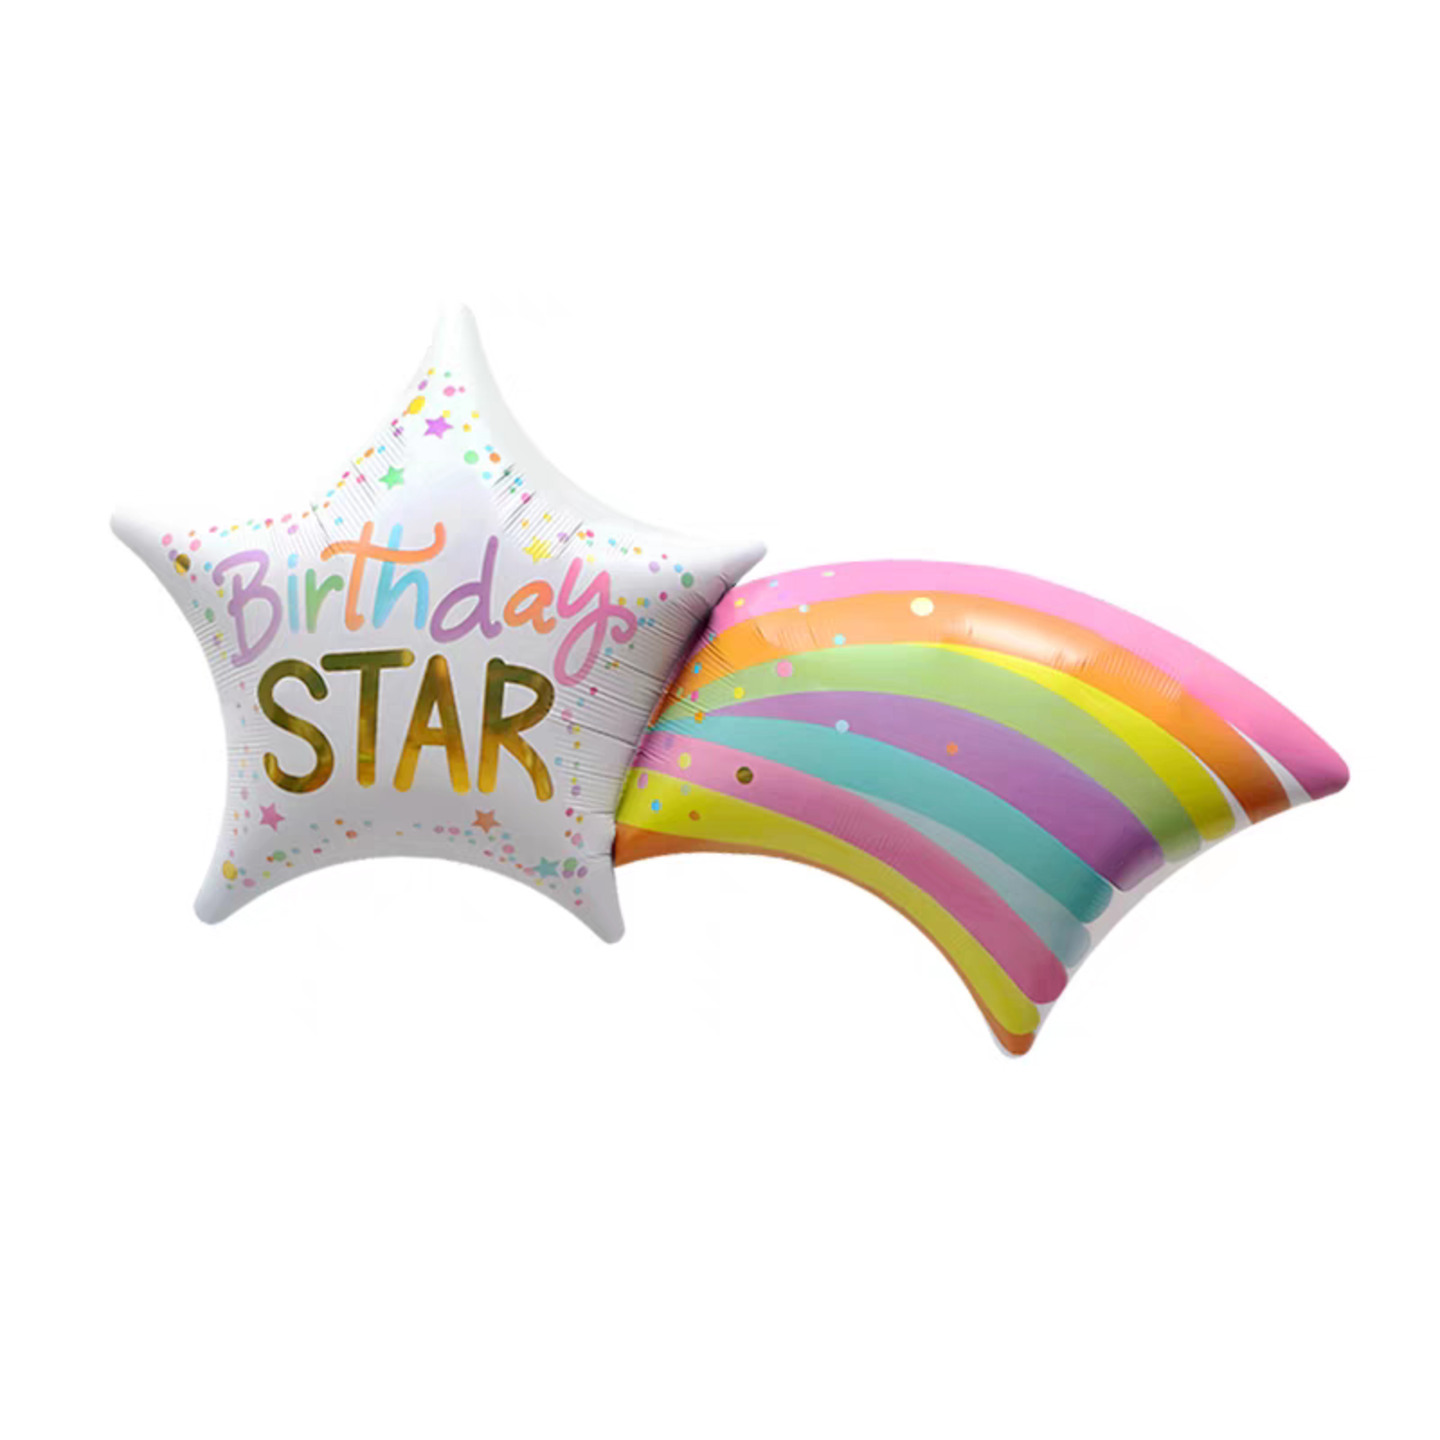 Birthday Star Rainbow Metallic Foil Balloon 